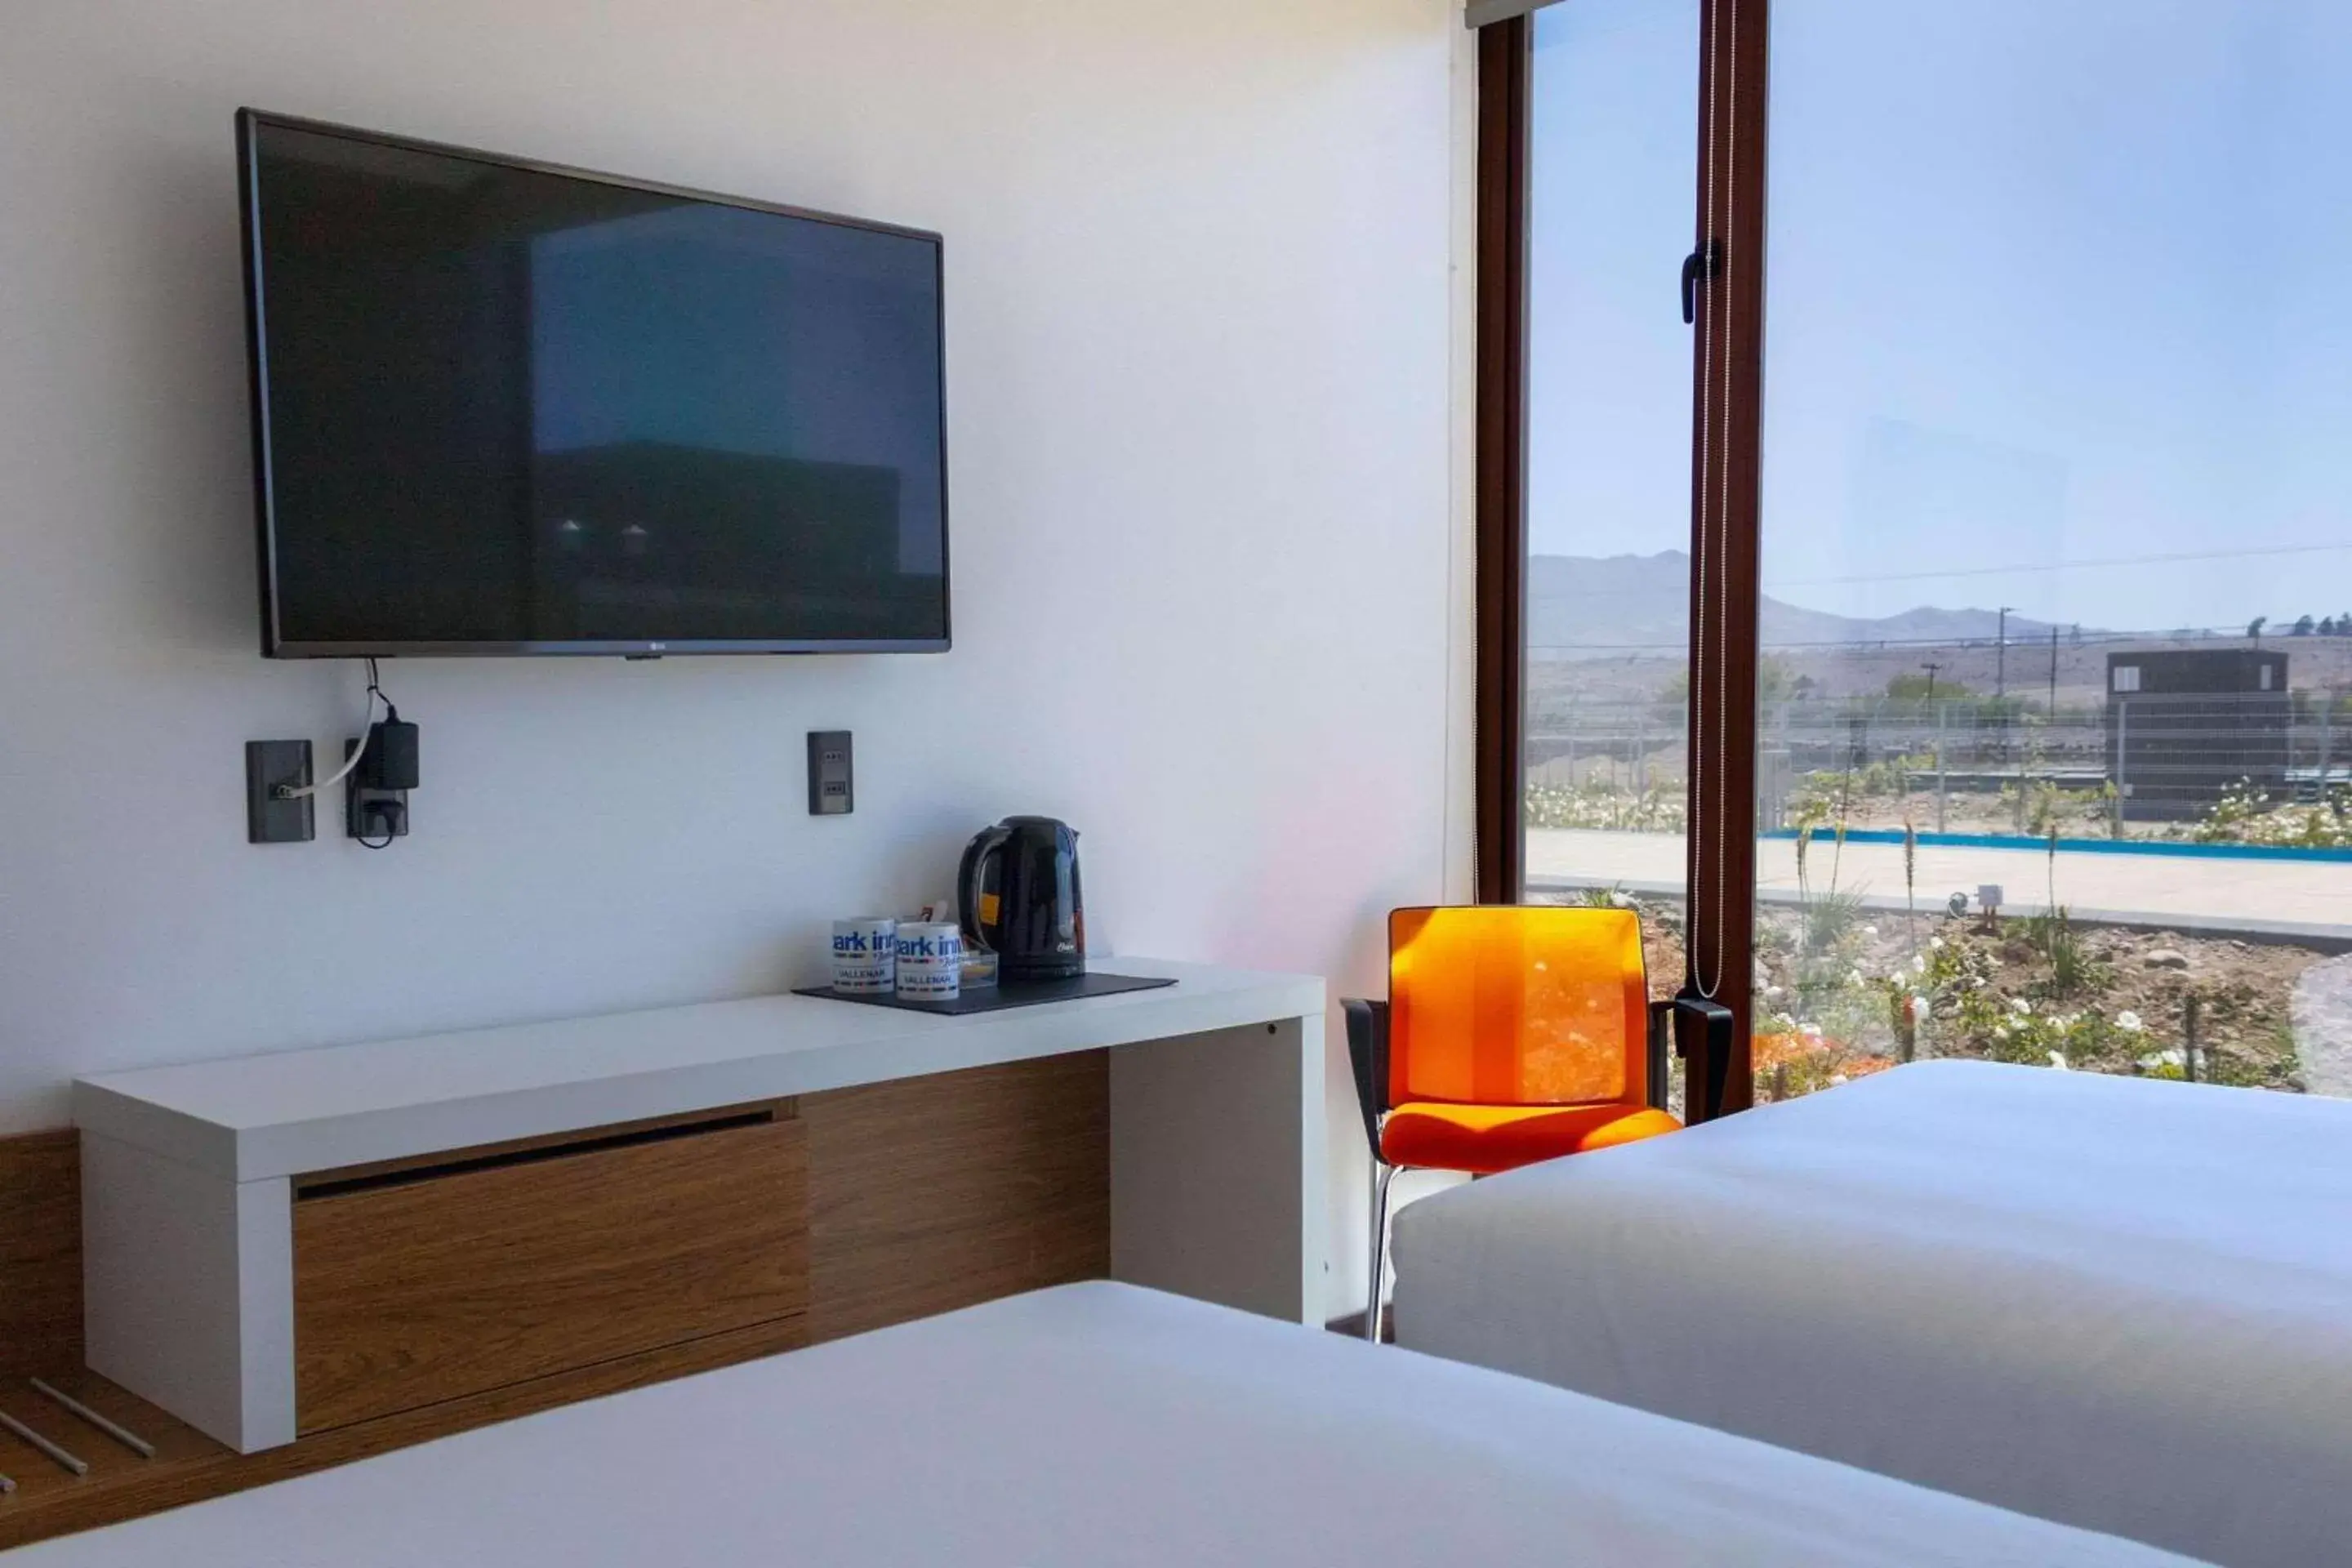 Bedroom, TV/Entertainment Center in Park Inn by Radisson Los Olivos de Vallenar